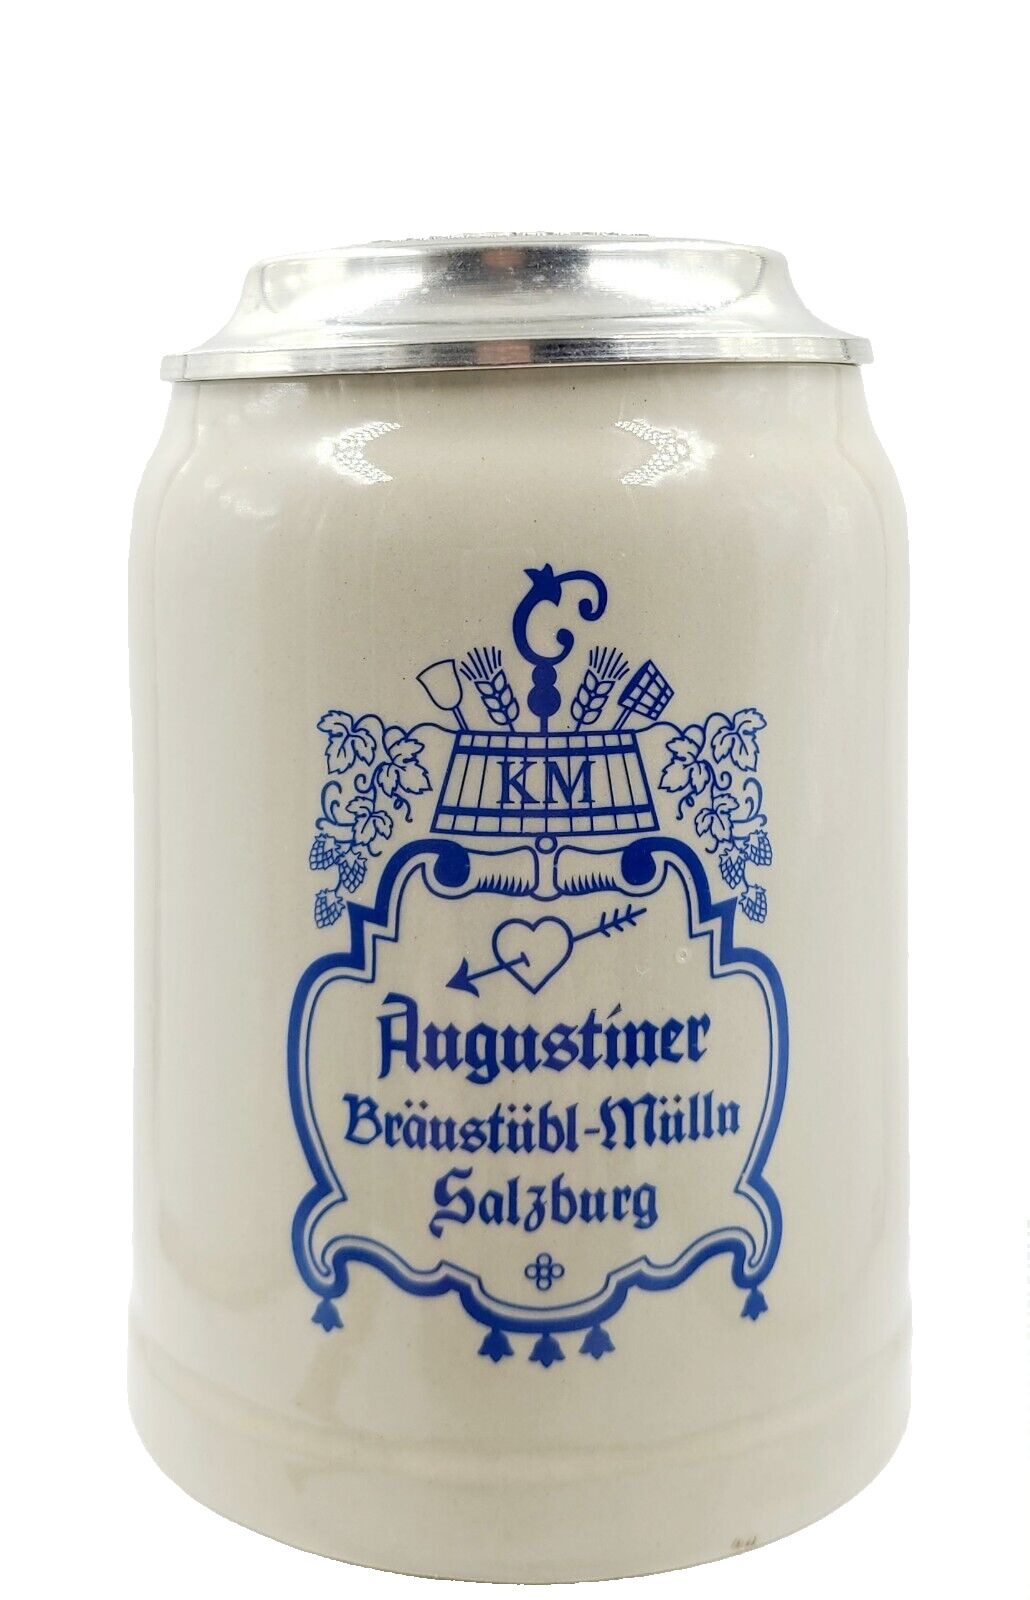 Augustiner Braustubl Mulln Salsburg Kloster Beer Stein .5l